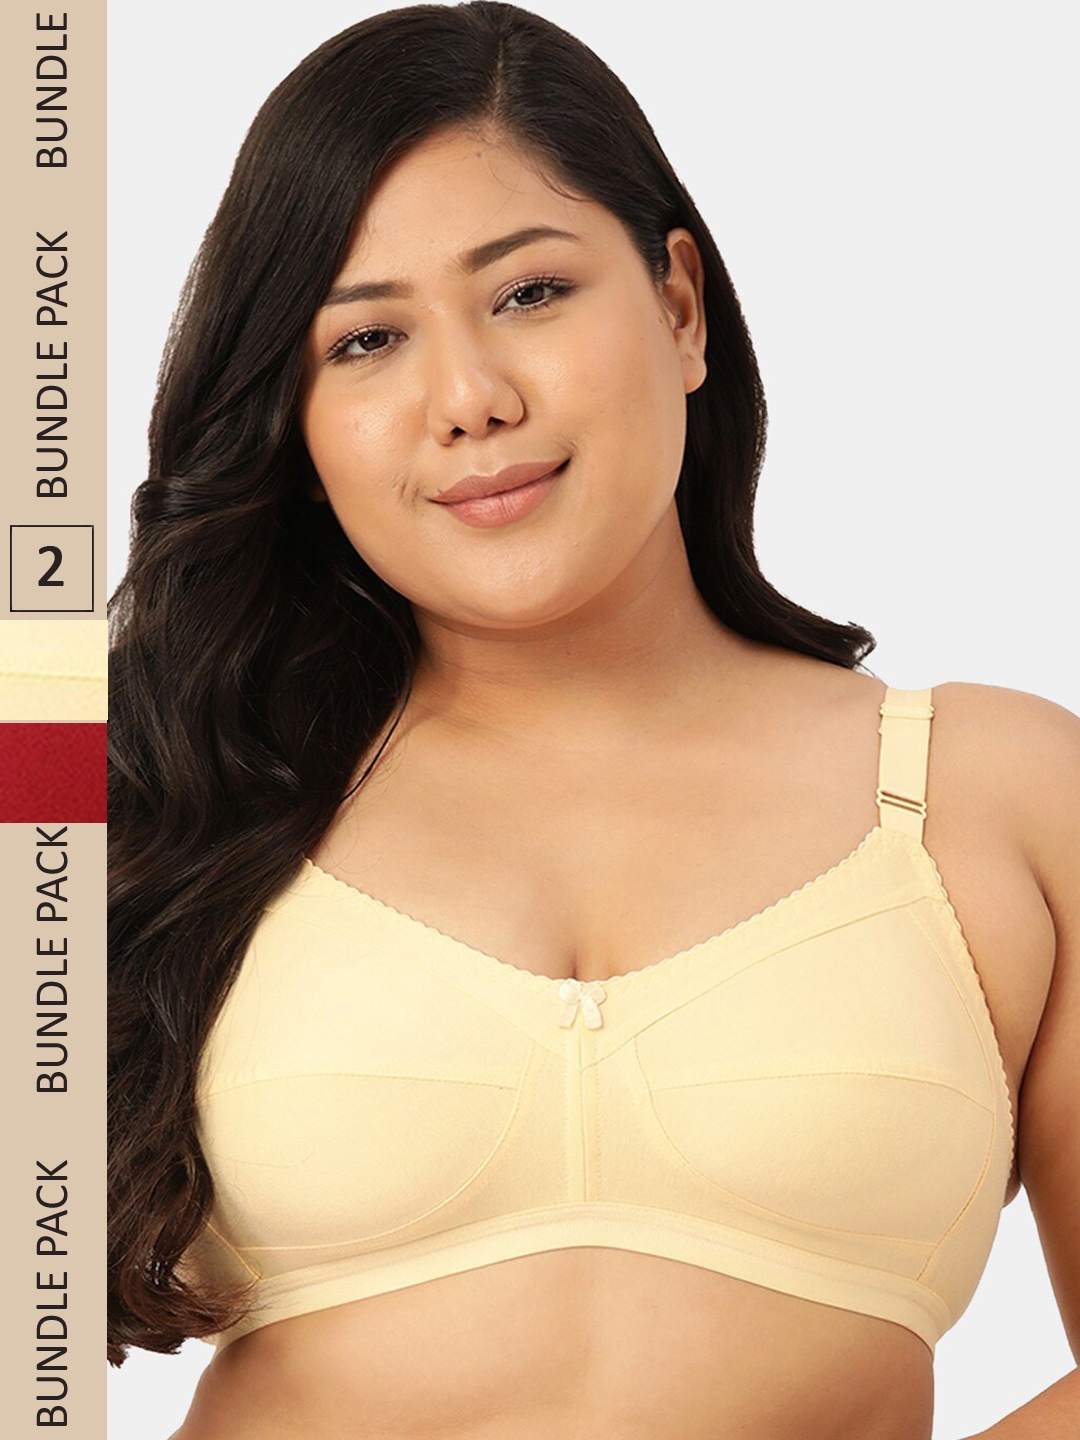 Minimiser Bra Size 46D - Buy Online, T-shirt bras